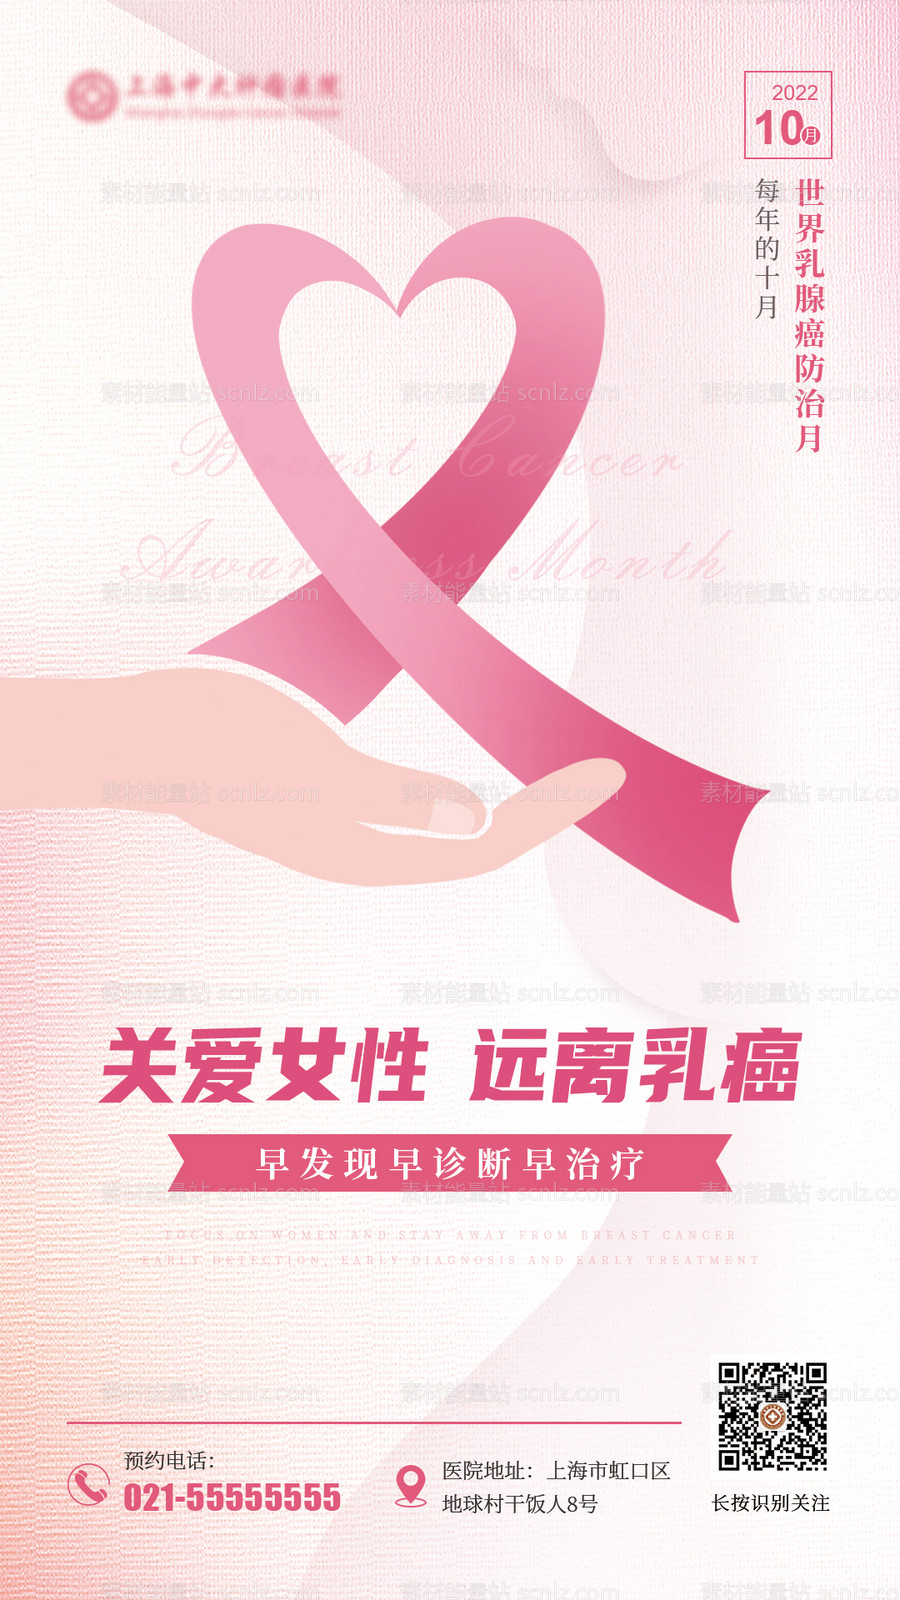 素材能量站-乳腺癌防治月